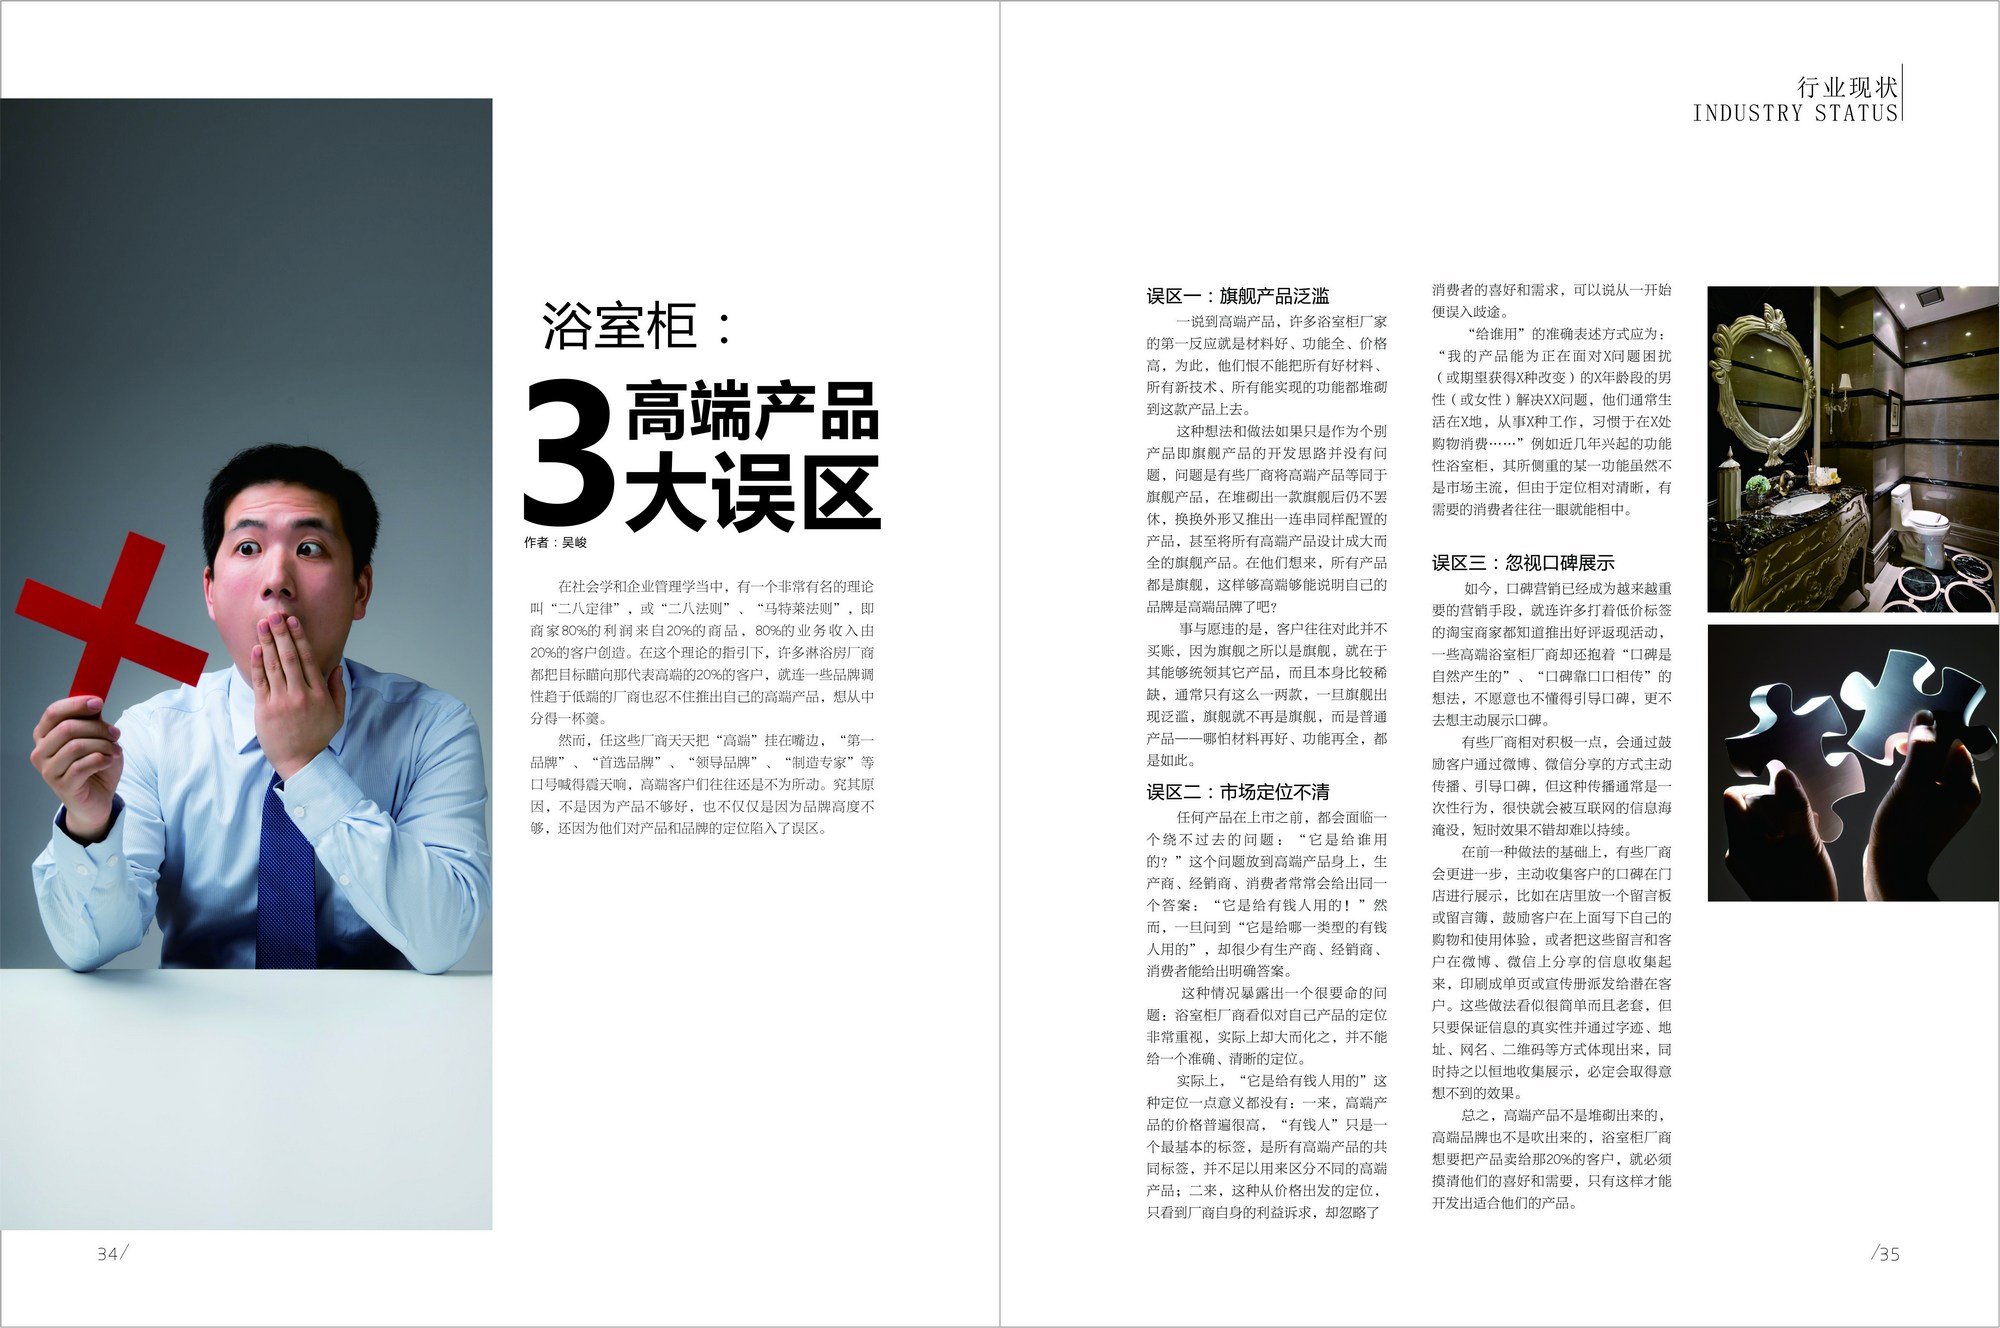 《中国卫浴》报杂志2015年6月刊第115期:文章标题—浴室柜:高端产品3